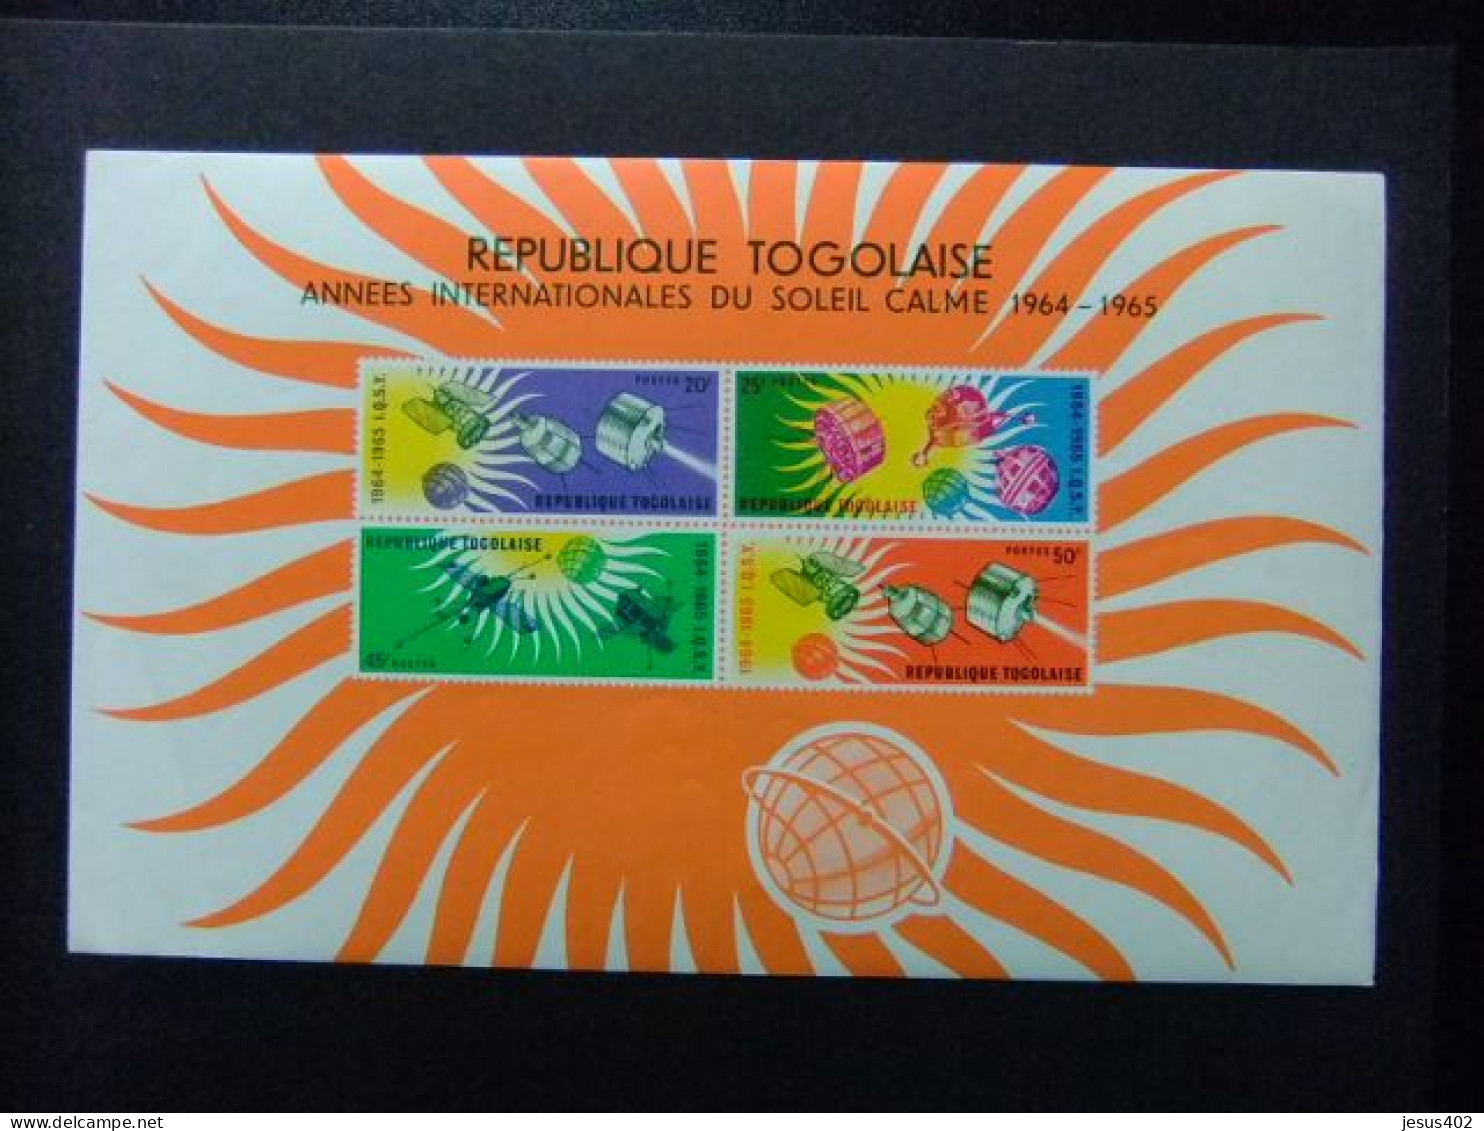 55 TOGO REPUBLIQUE TOGOLAISE 1964 / AÑO INTERNACIONAL Del SOL / YVERT BLOC 13 ** MNH - Togo (1960-...)